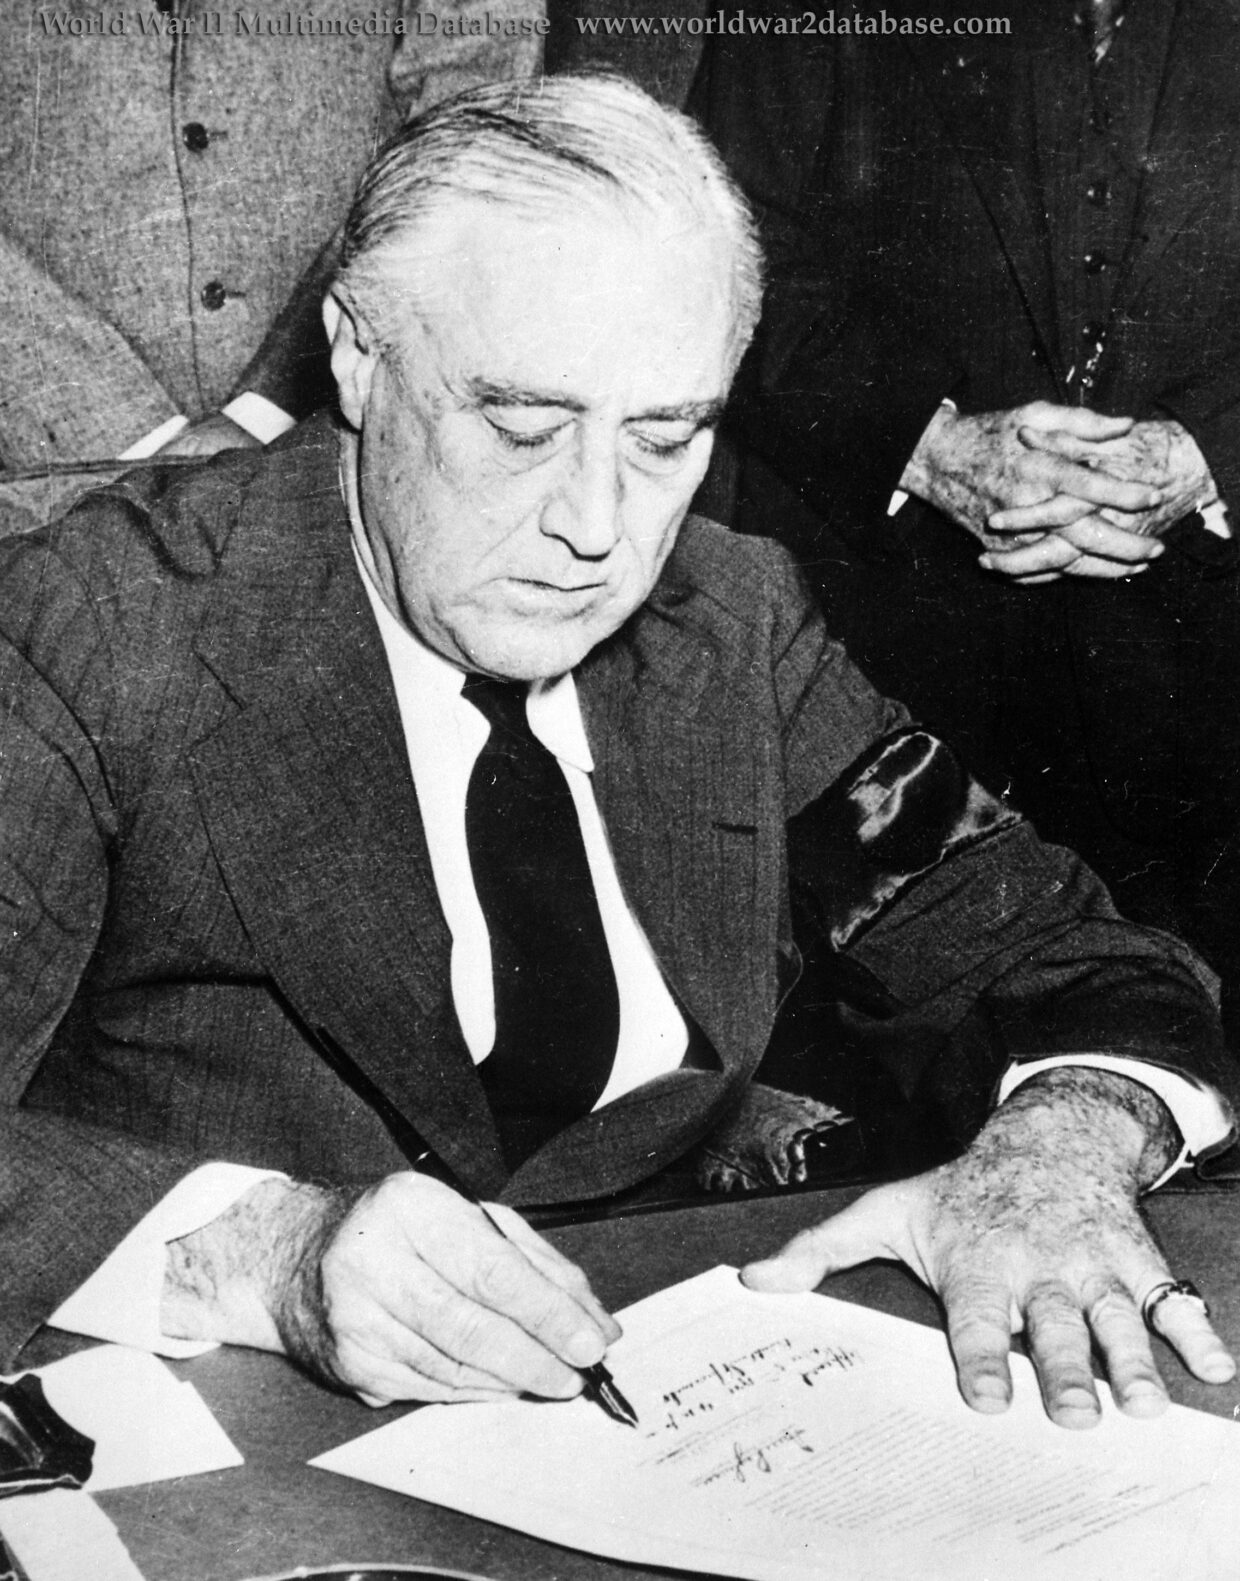 President Franklin D. Roosevelt Signs the Declaration of War Against Japan